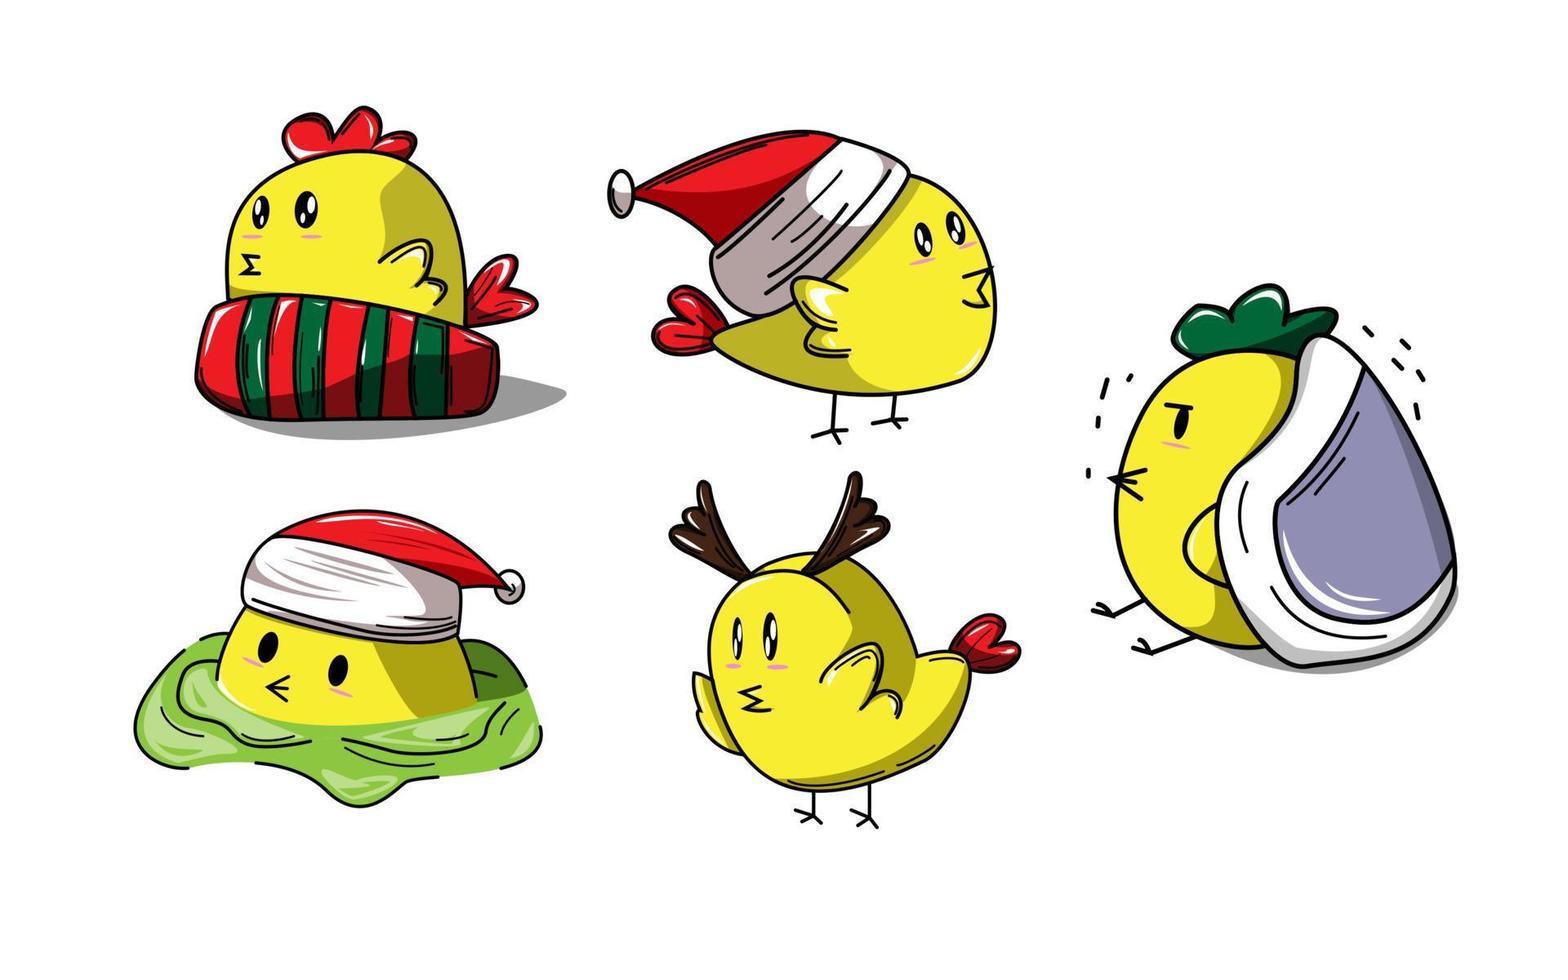 vijf schattige gele kuikens met kerstmutsen op een witte achtergrond vector